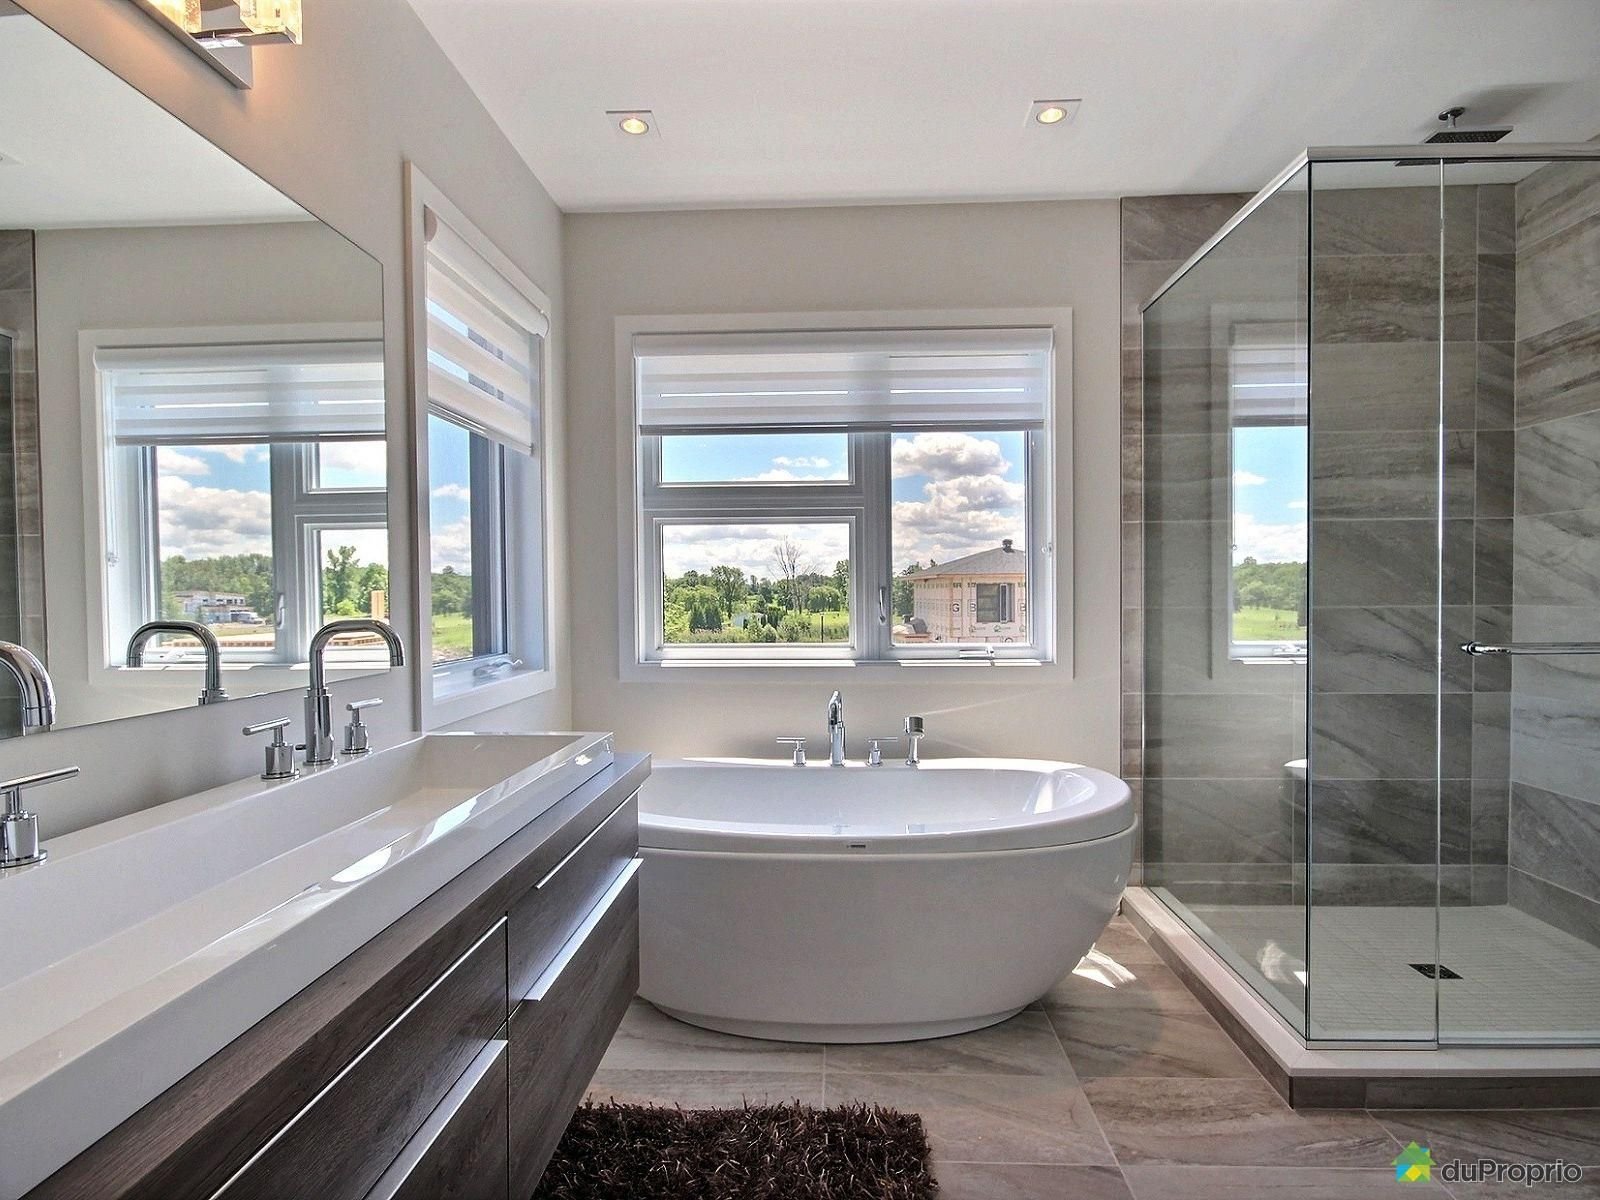 Ванна с большим окном. Ванная комната с большим окном. Ванная с большими окнами. Ванная с окном. Стильная ванная с окном.